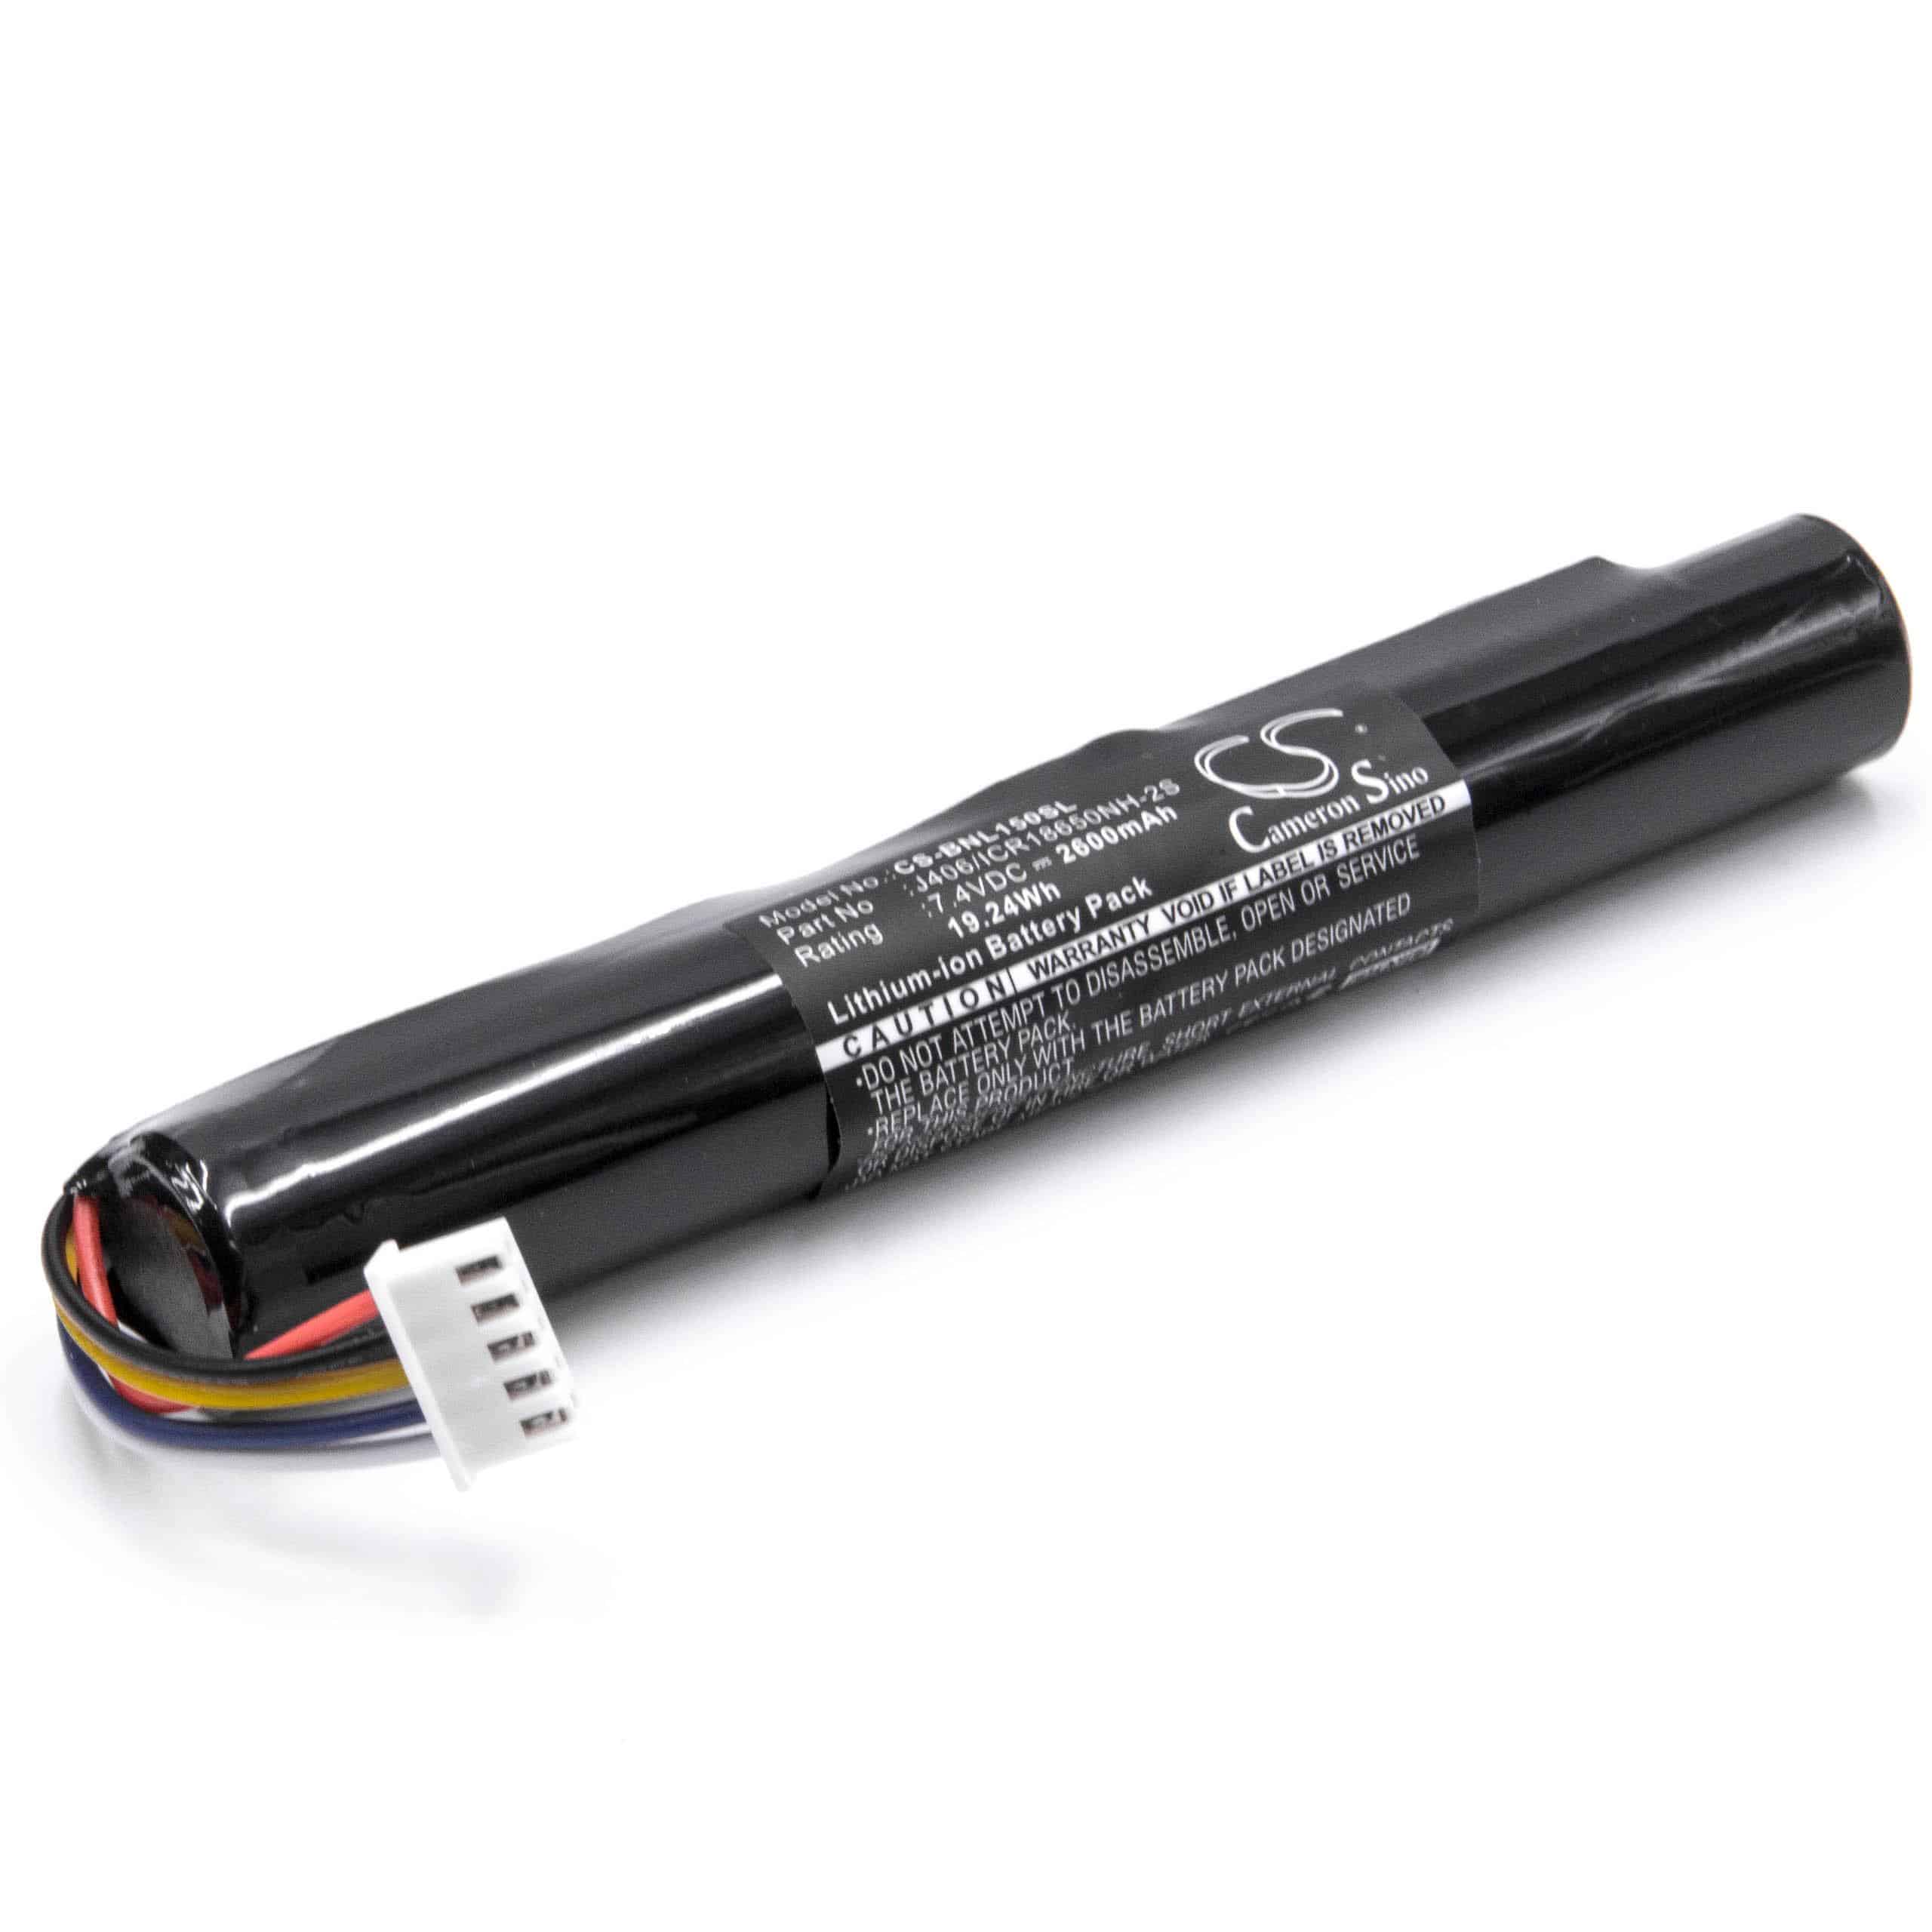 Batterie remplace Bang & Olufsen J406/ICR18650NH-2S pour enceinte Bang & Olufsen - 2600mAh 7,4V Li-ion